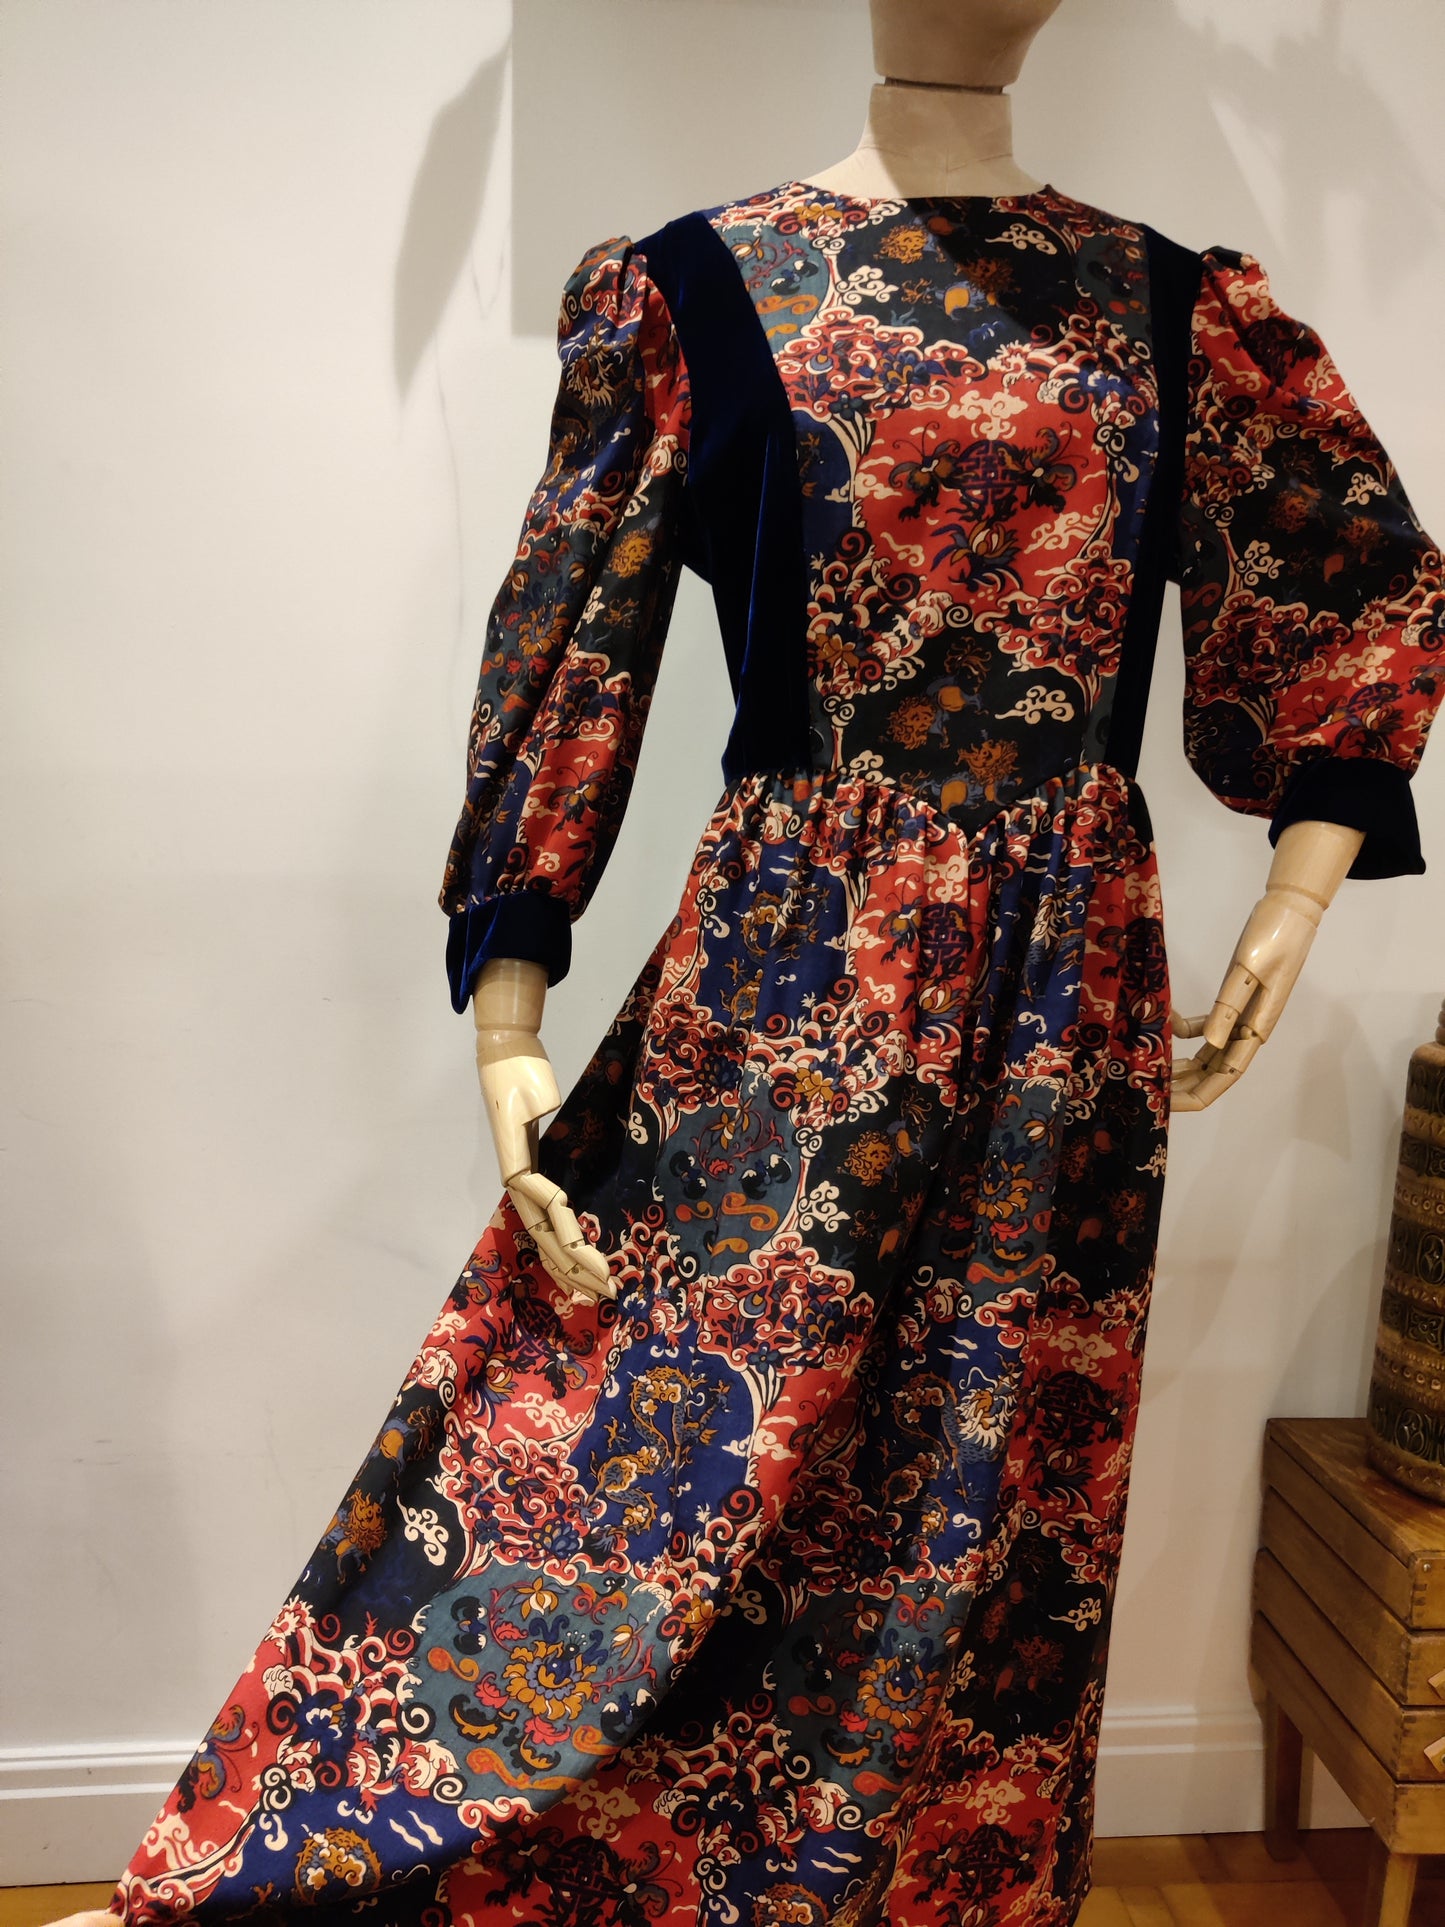 Stunning floral vintage dress